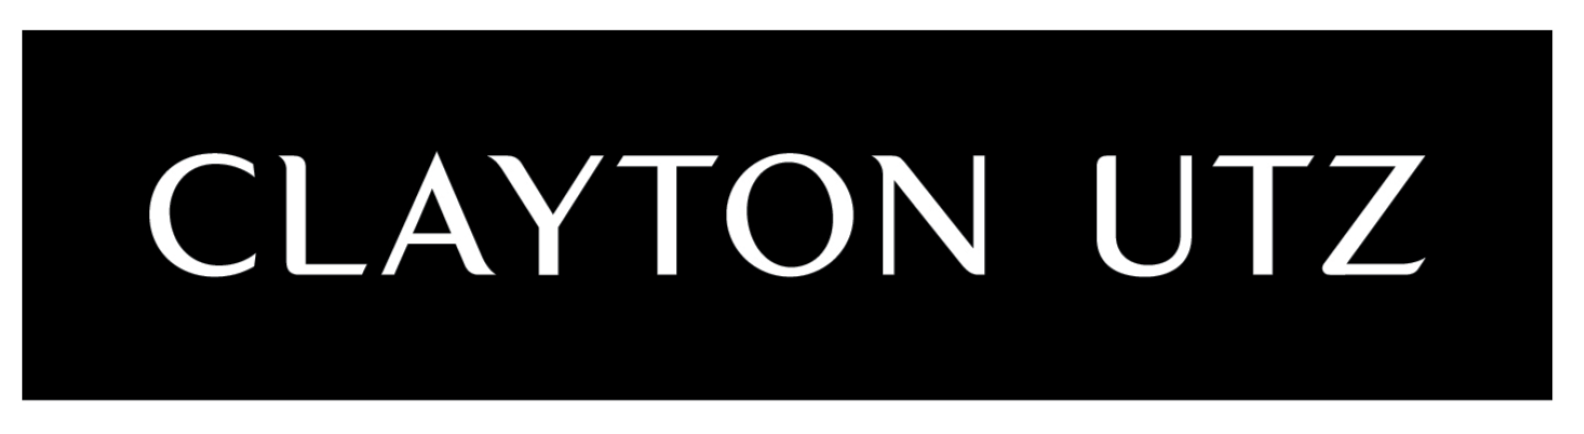 Clayton-Utz-Logo.png